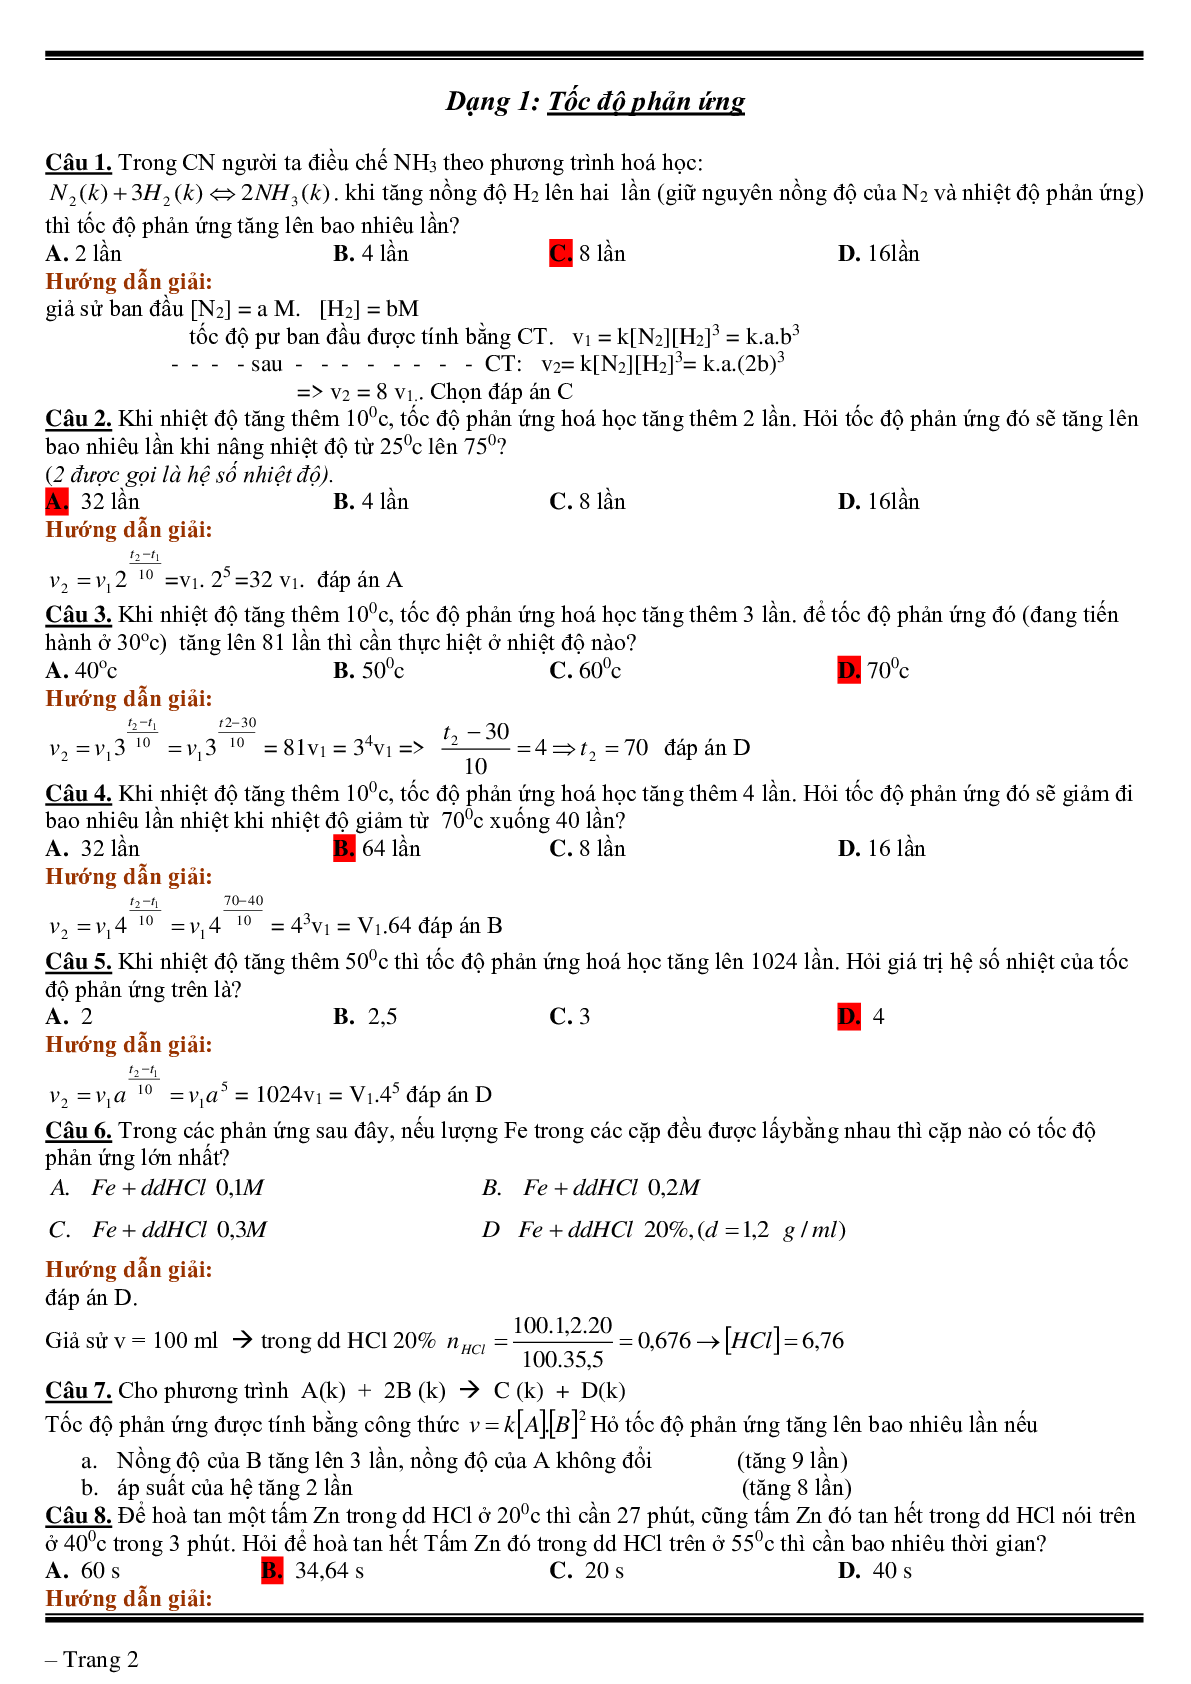 Lý thuyết, bài tập về tốc độ phản ứng- cân bằng hóa học có đáp án (trang 2)